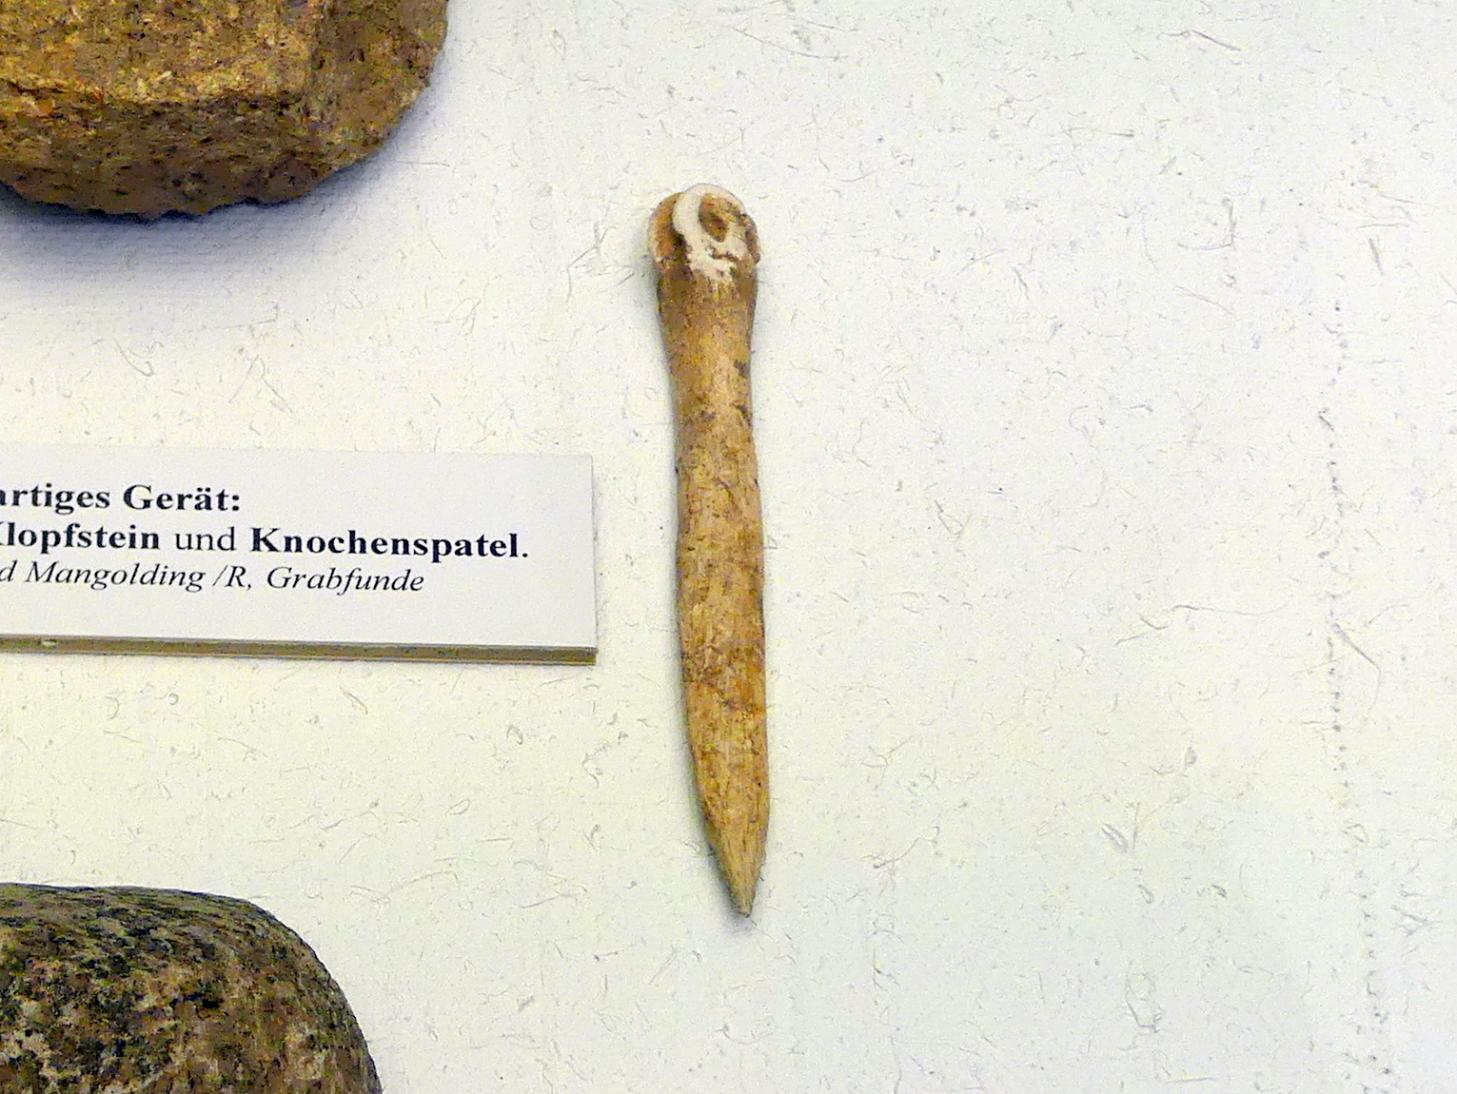 Knochenspatel, Frühneolithikum (Altneolithikum), 5500 - 4900 v. Chr.